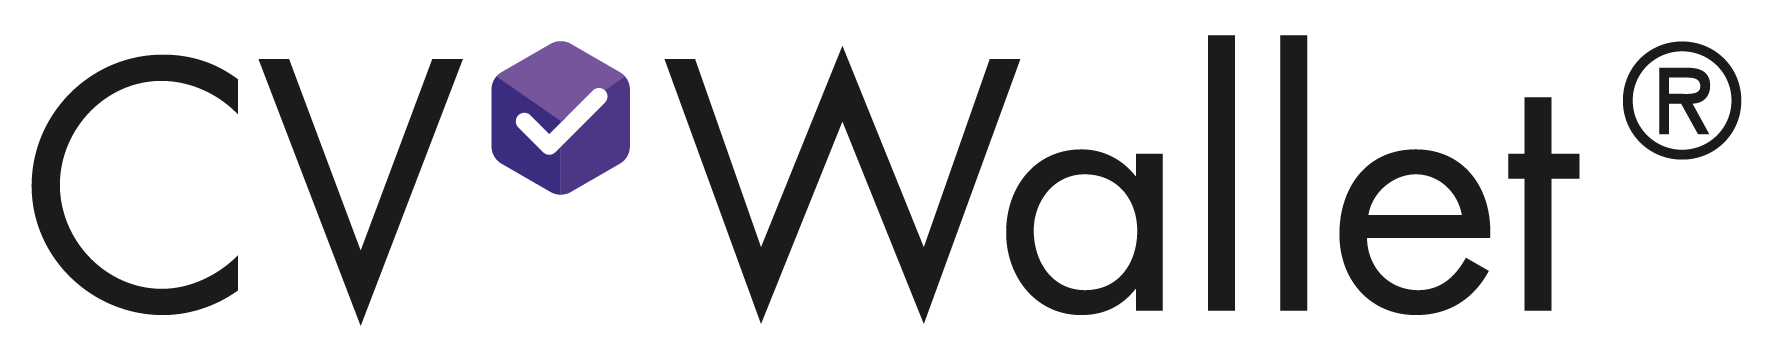 CV Wallet Logo